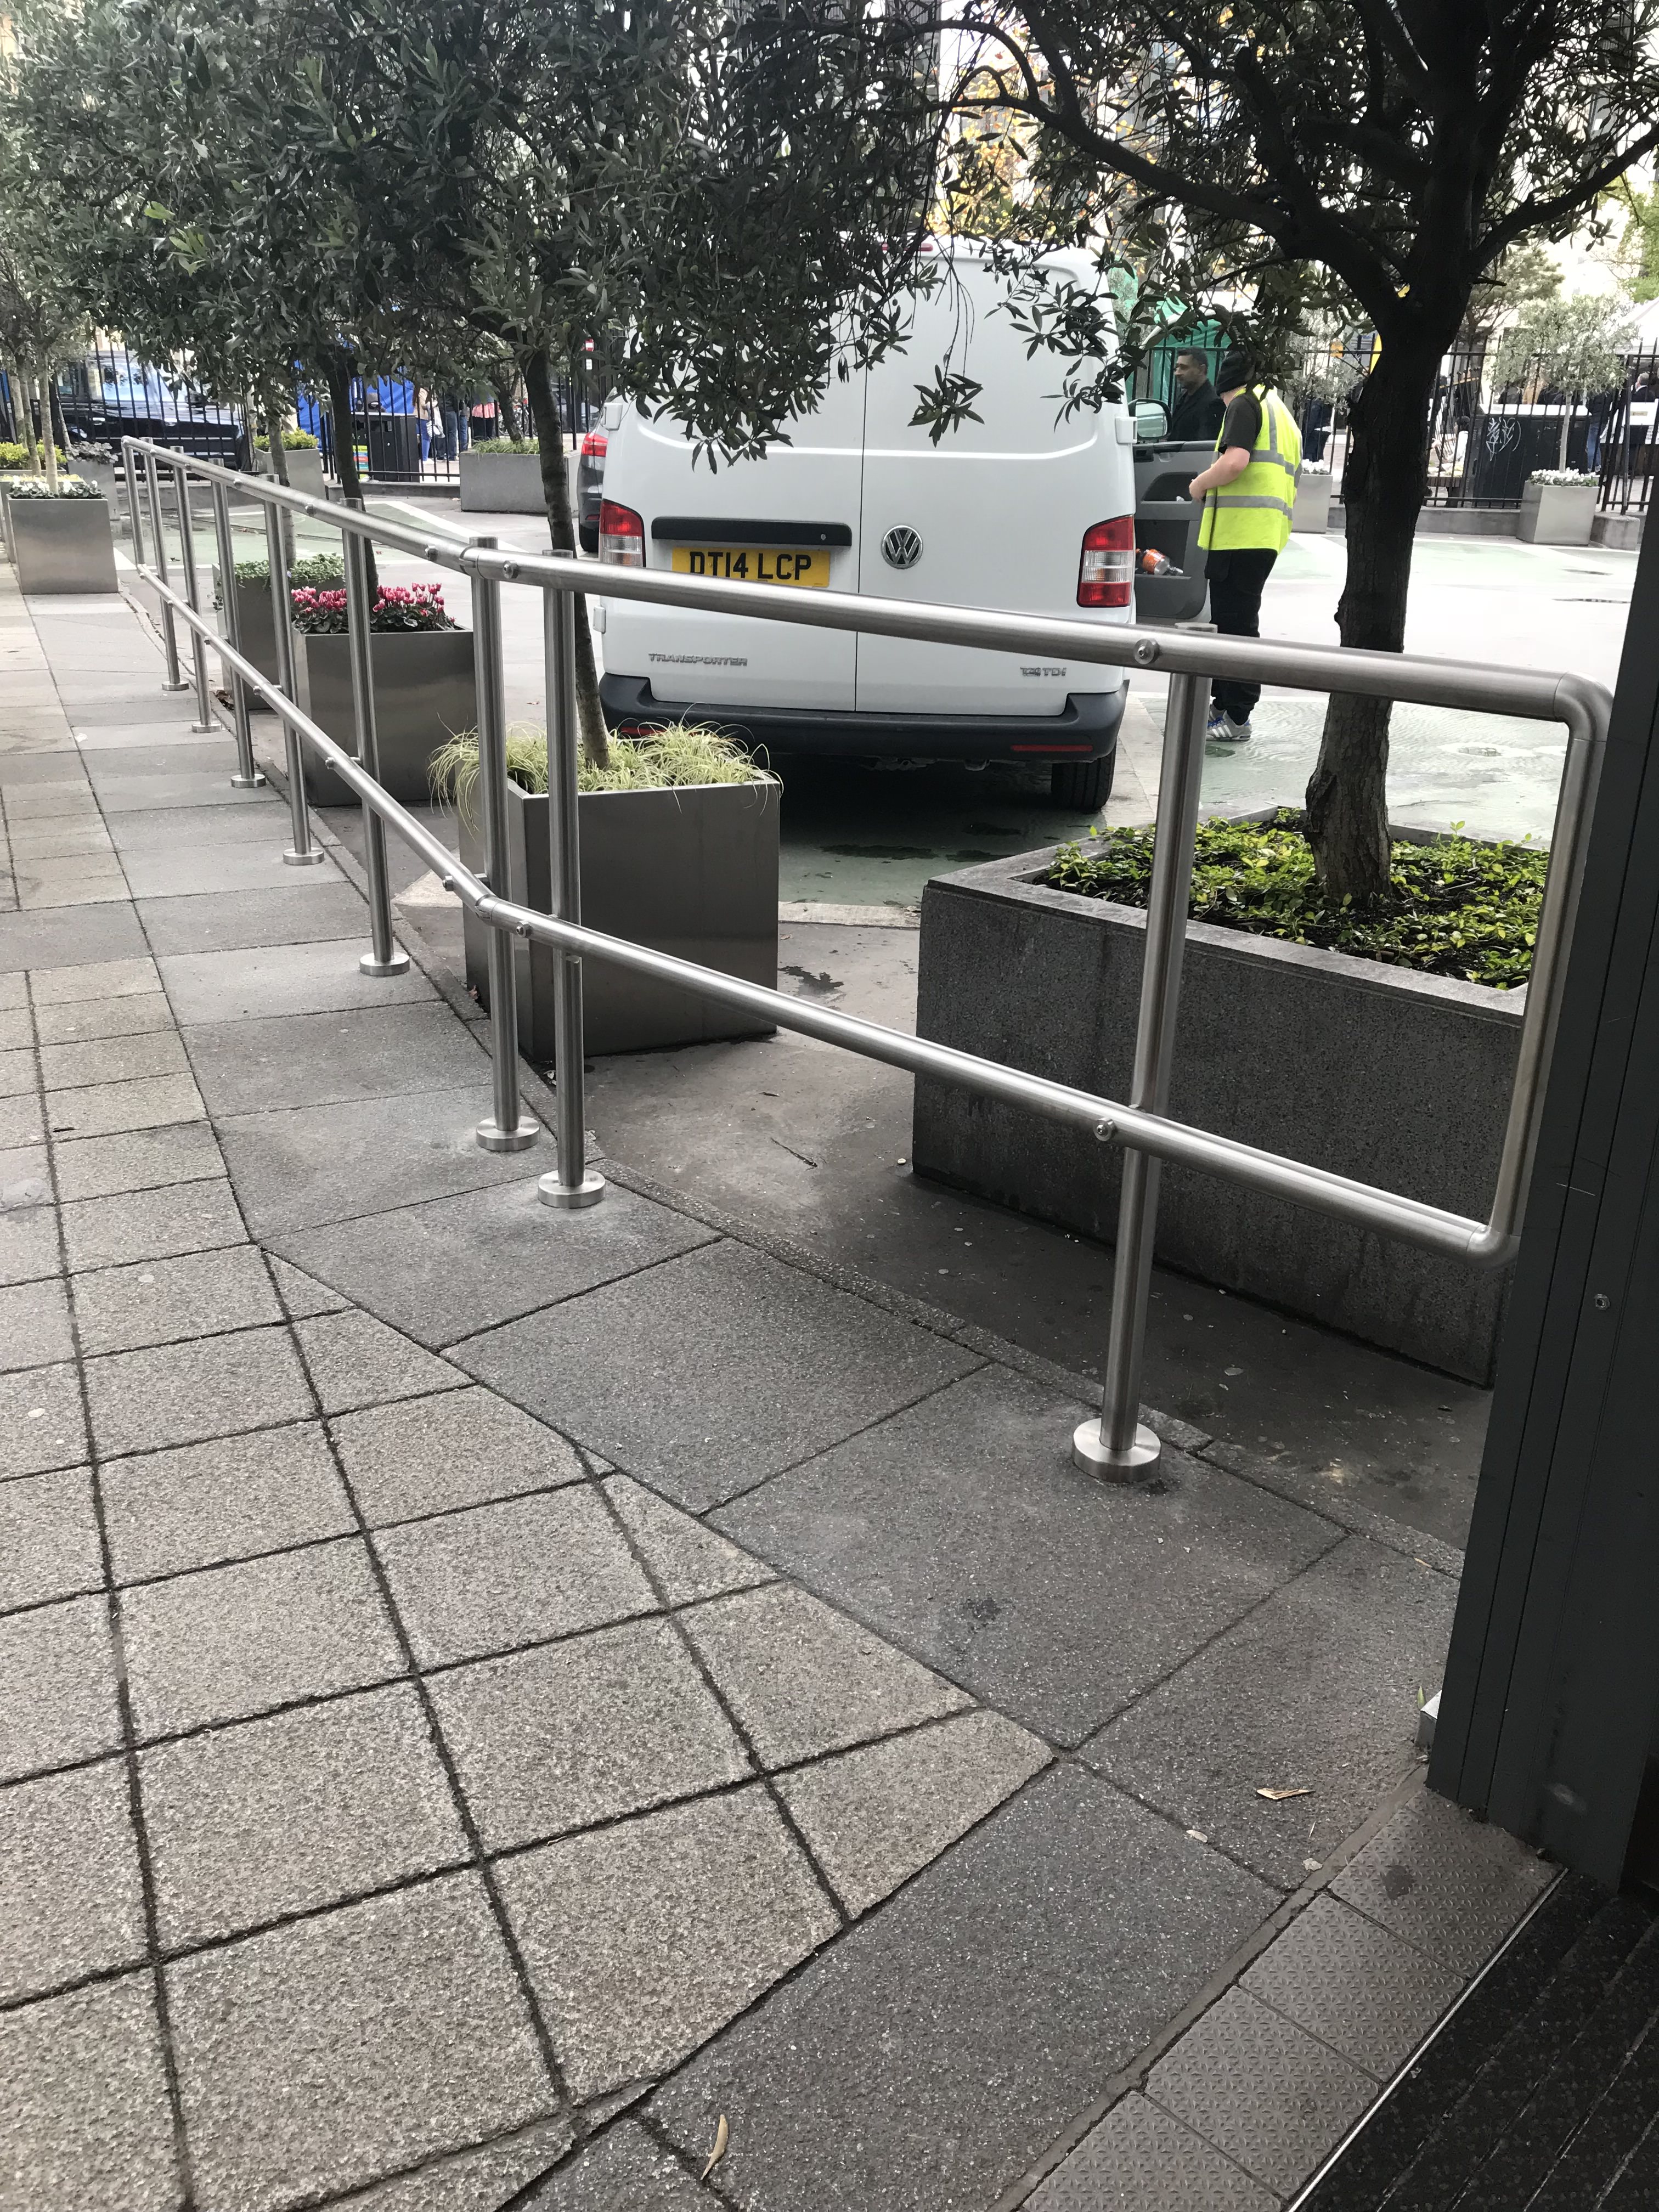 exterior handrail created barrier on carpark